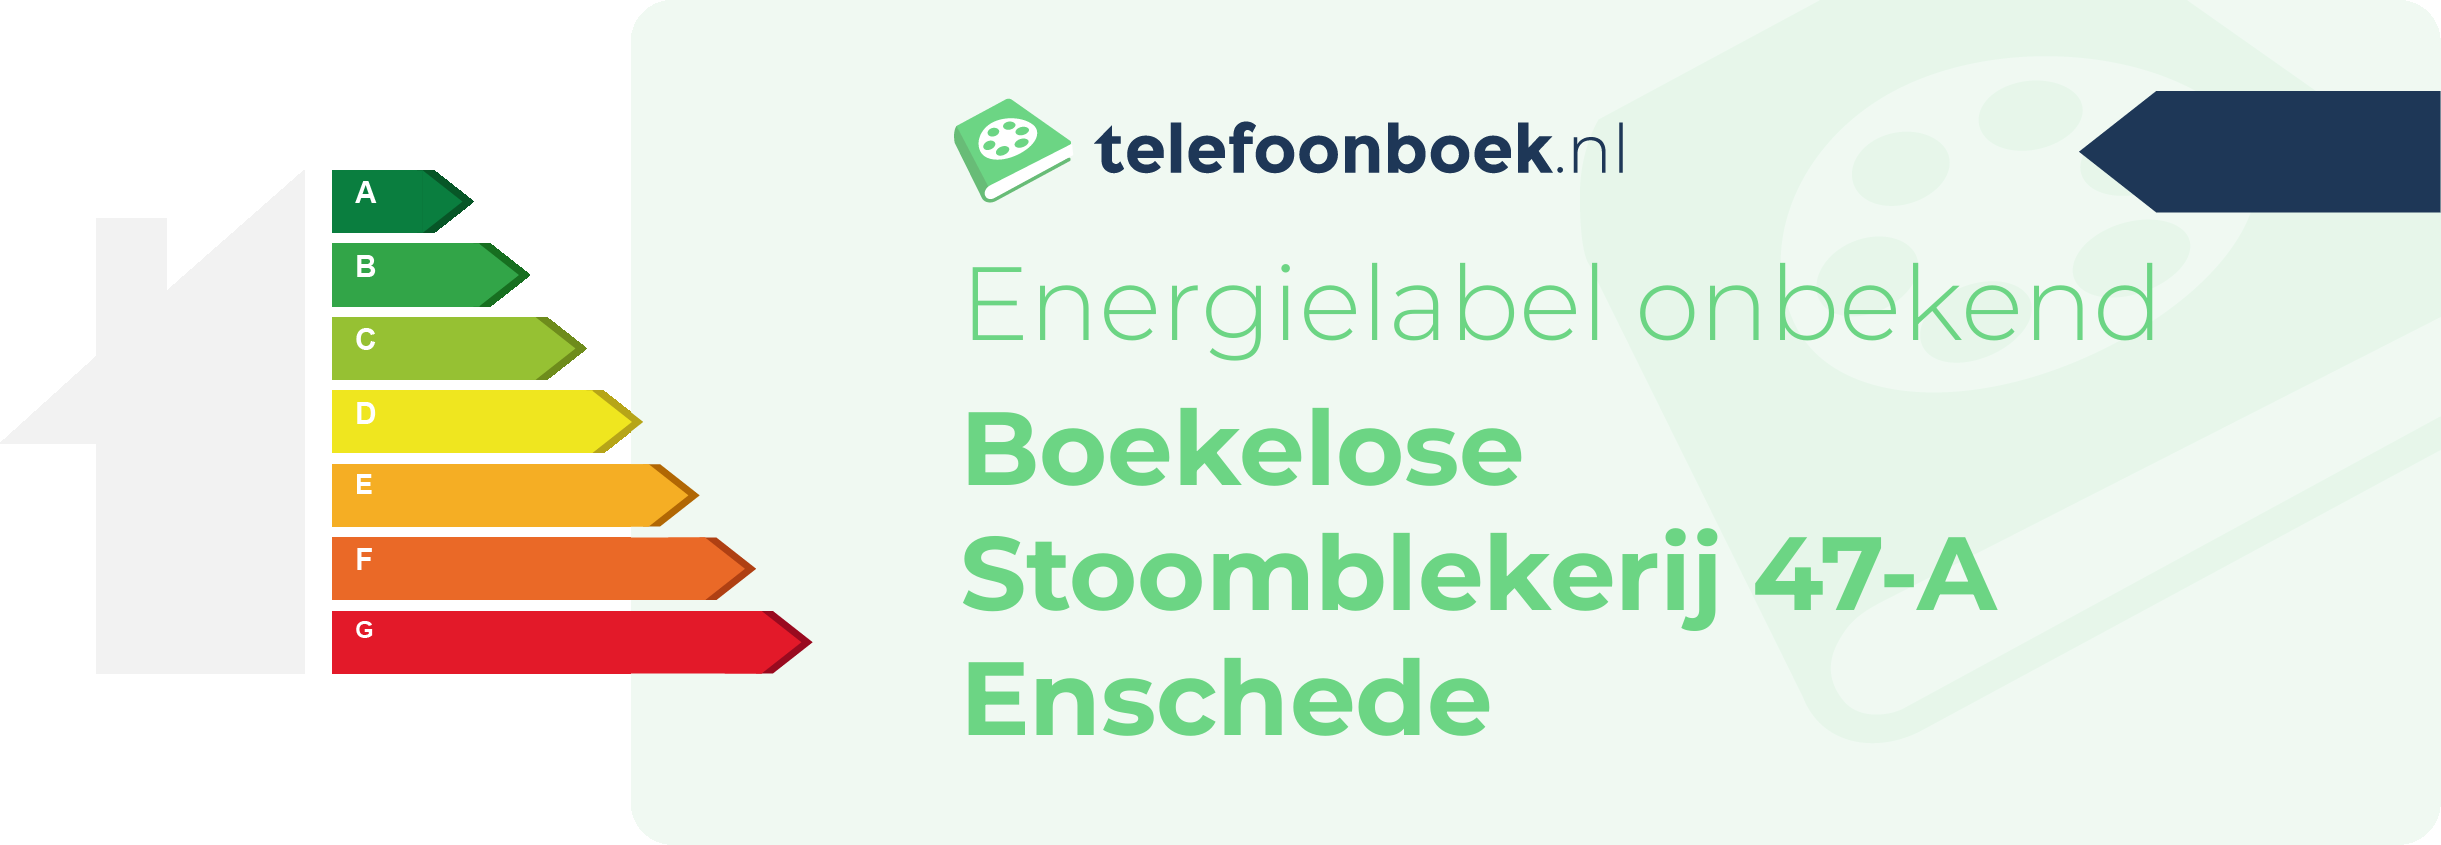 Energielabel Boekelose Stoomblekerij 47-A Enschede